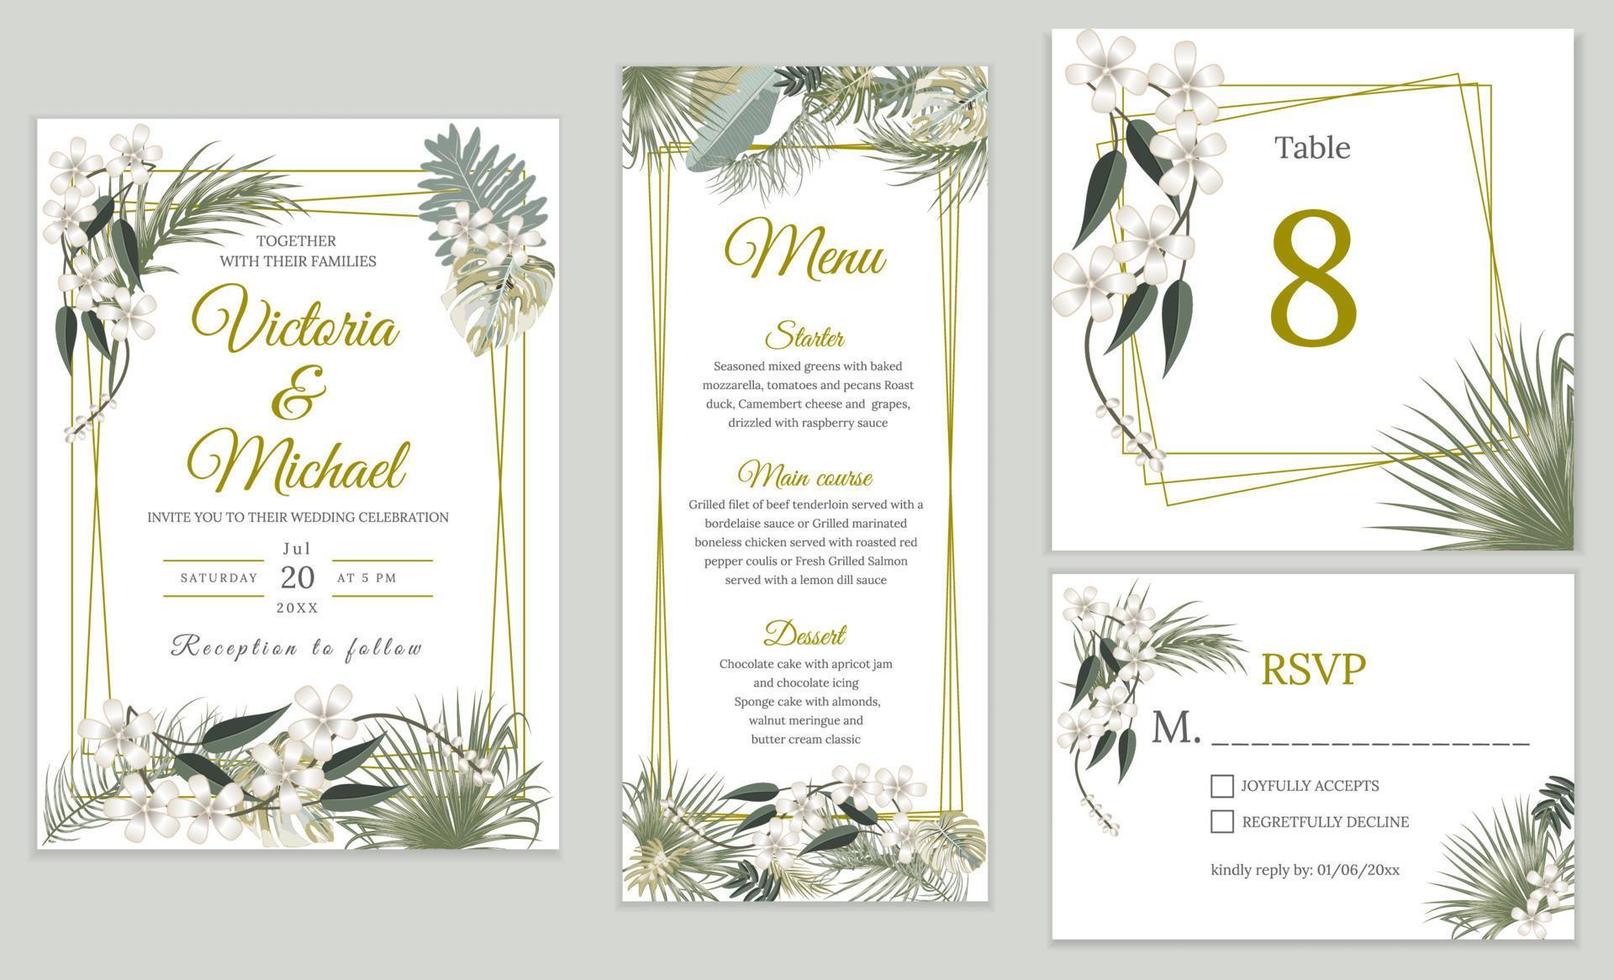 design de cartão de convite de casamento, convite floral. selva tropical deixa conjunto de moldura elegante, plantas verde-oliva, folhas de palmeira. vetor